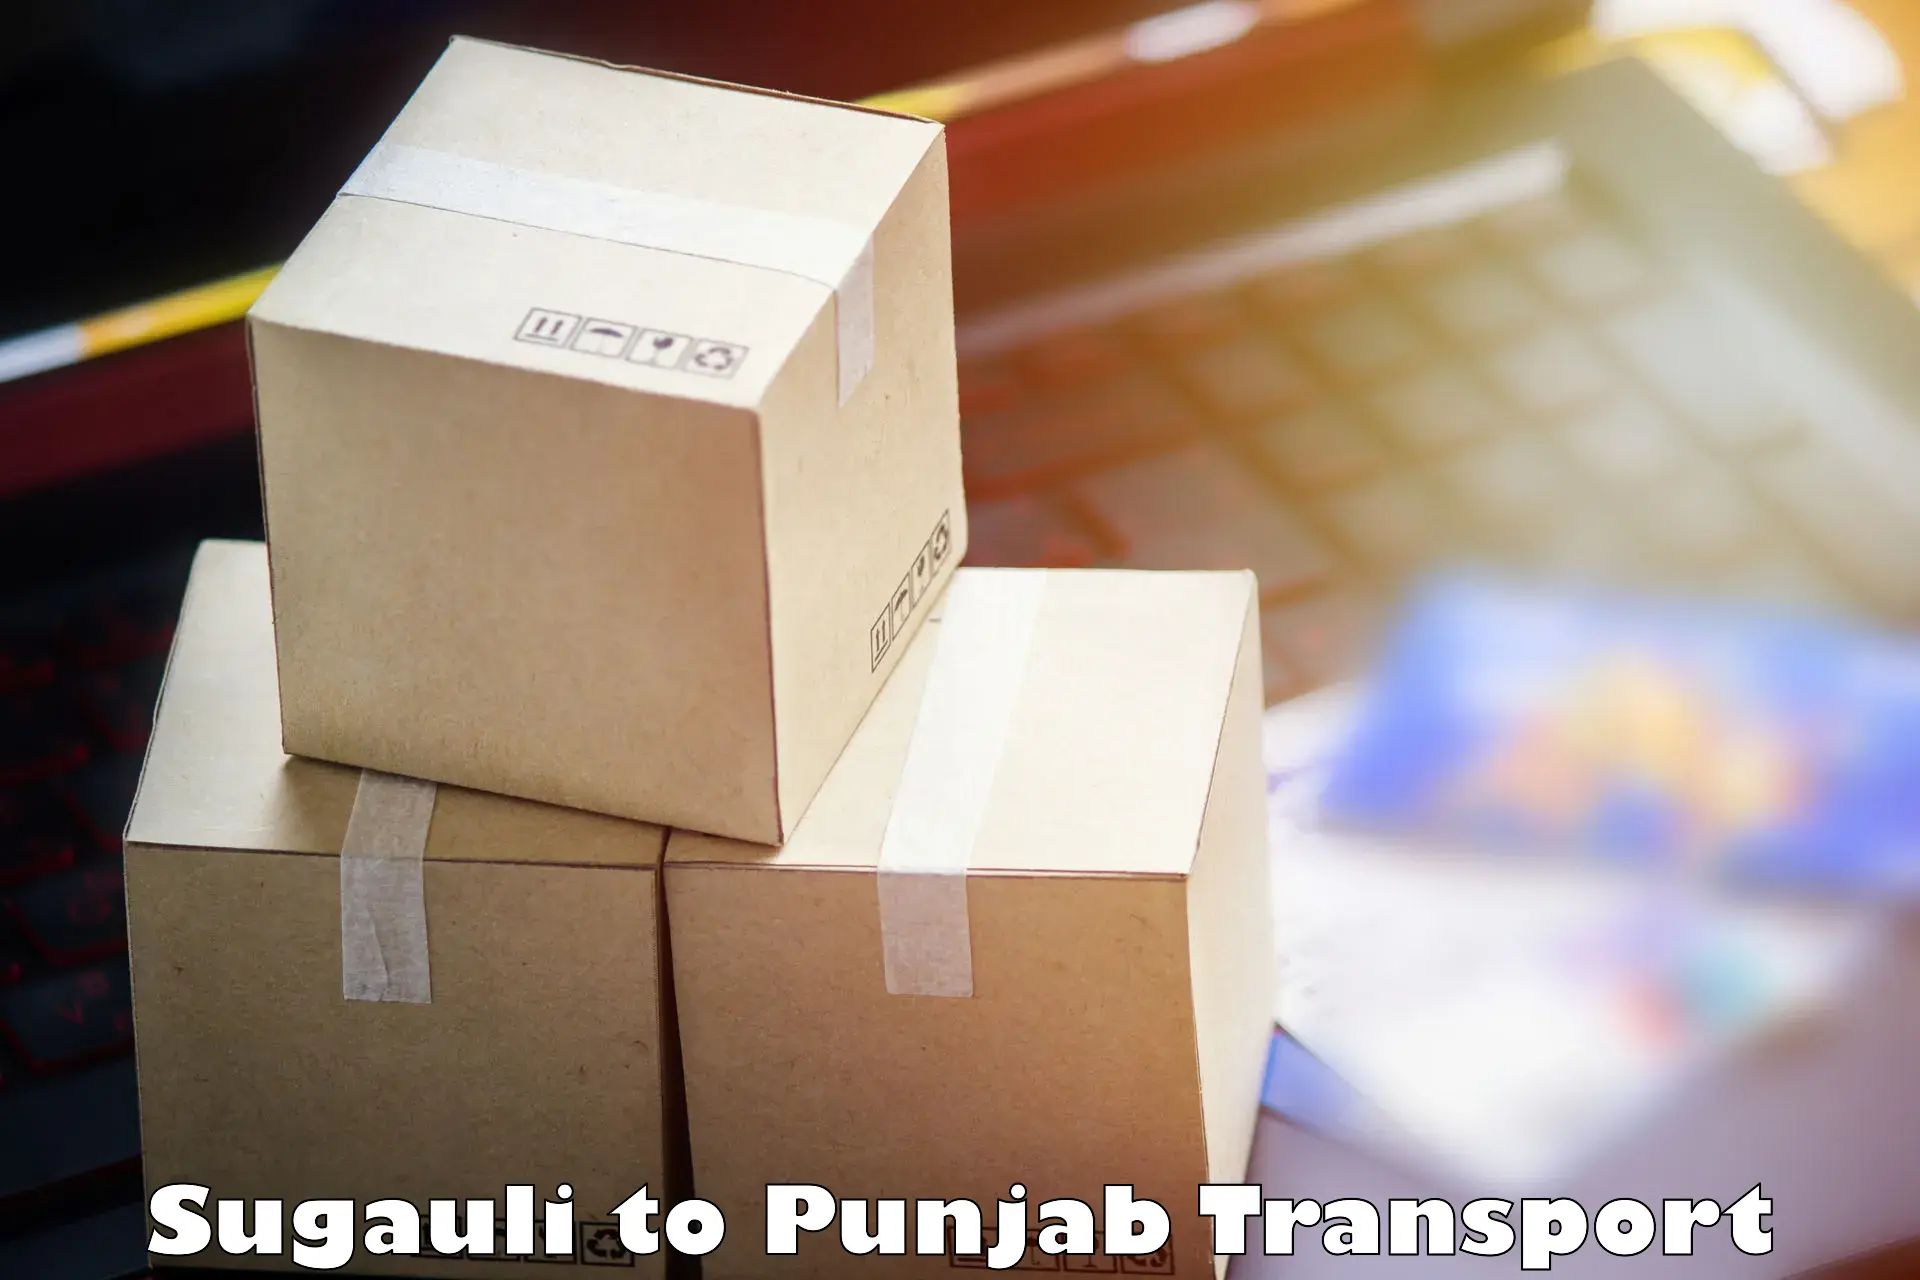 Nearby transport service Sugauli to Central University of Punjab Bathinda